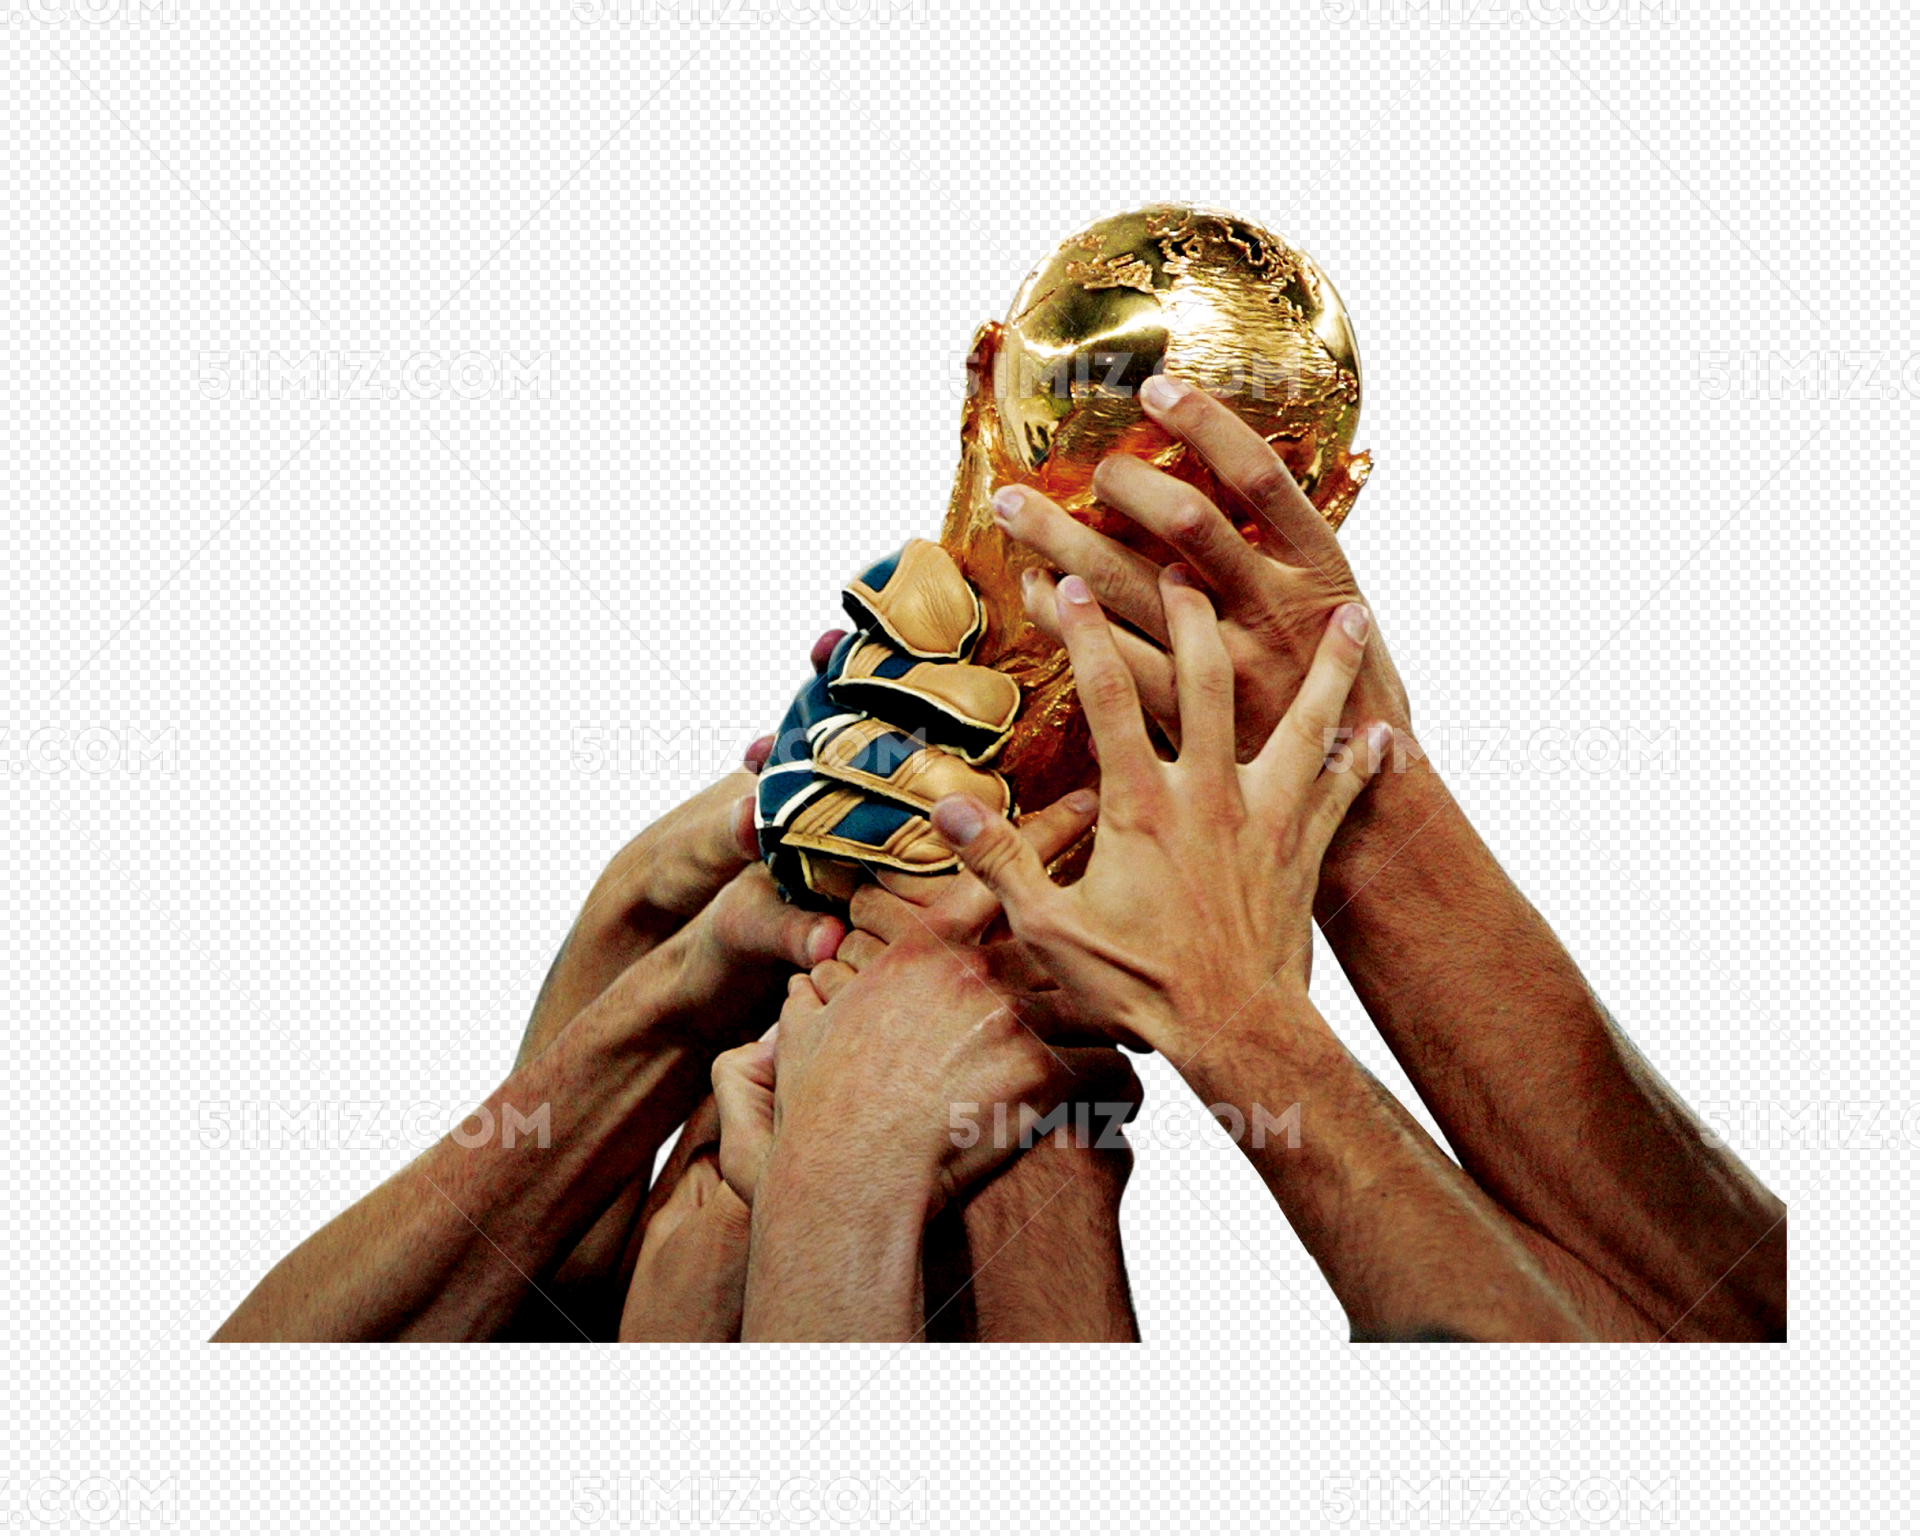 蓝色背景中正面狂人握足球举拳的照片 库存照片. 图片 包括有 生活方式, 男性, 方式, 冠军, 作用 - 228143578